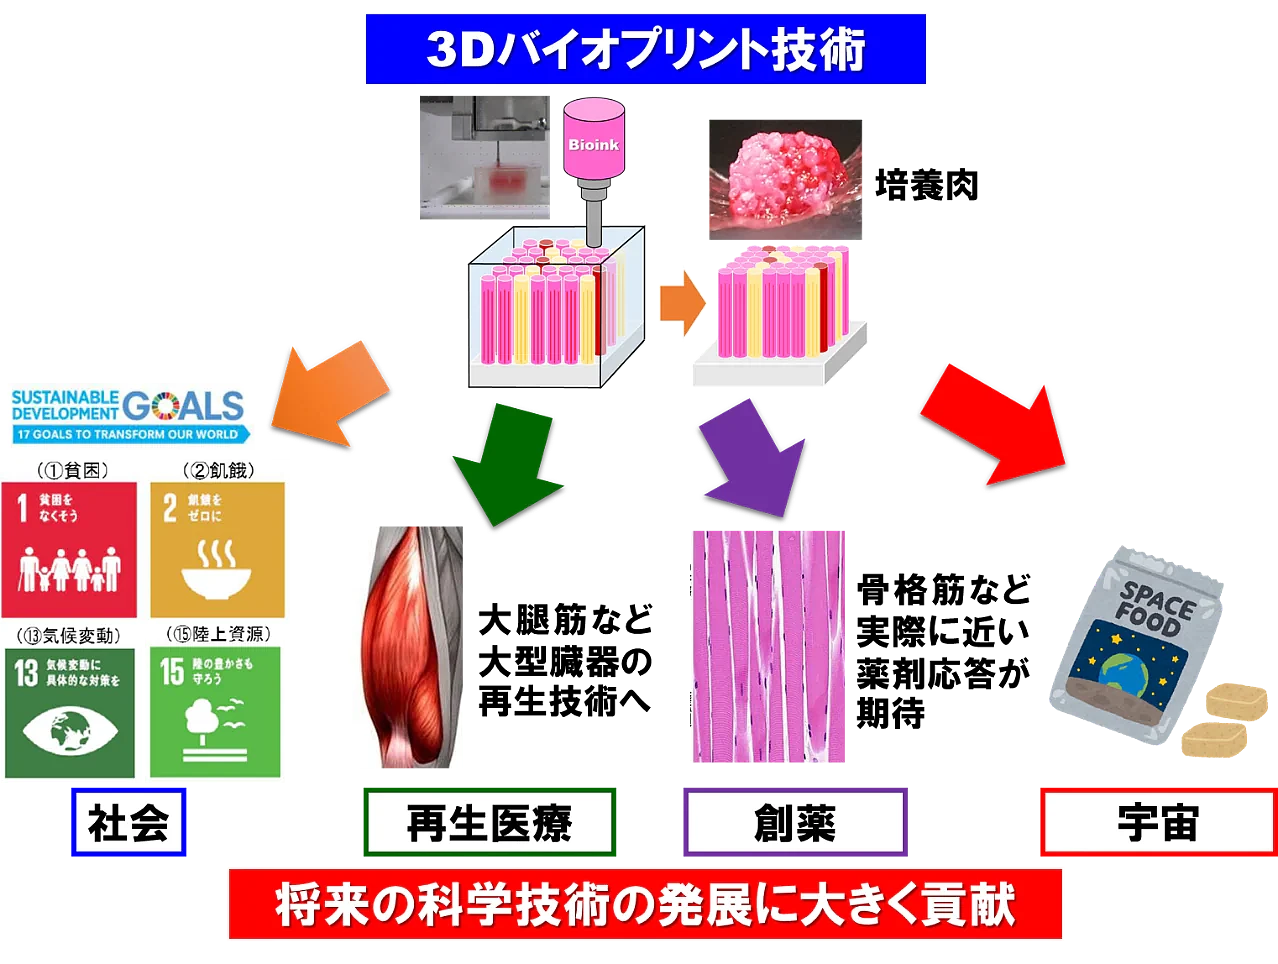 大阪大学和岛津制作所研发出利用3D打印机制造“培养肉”的技术 - 3